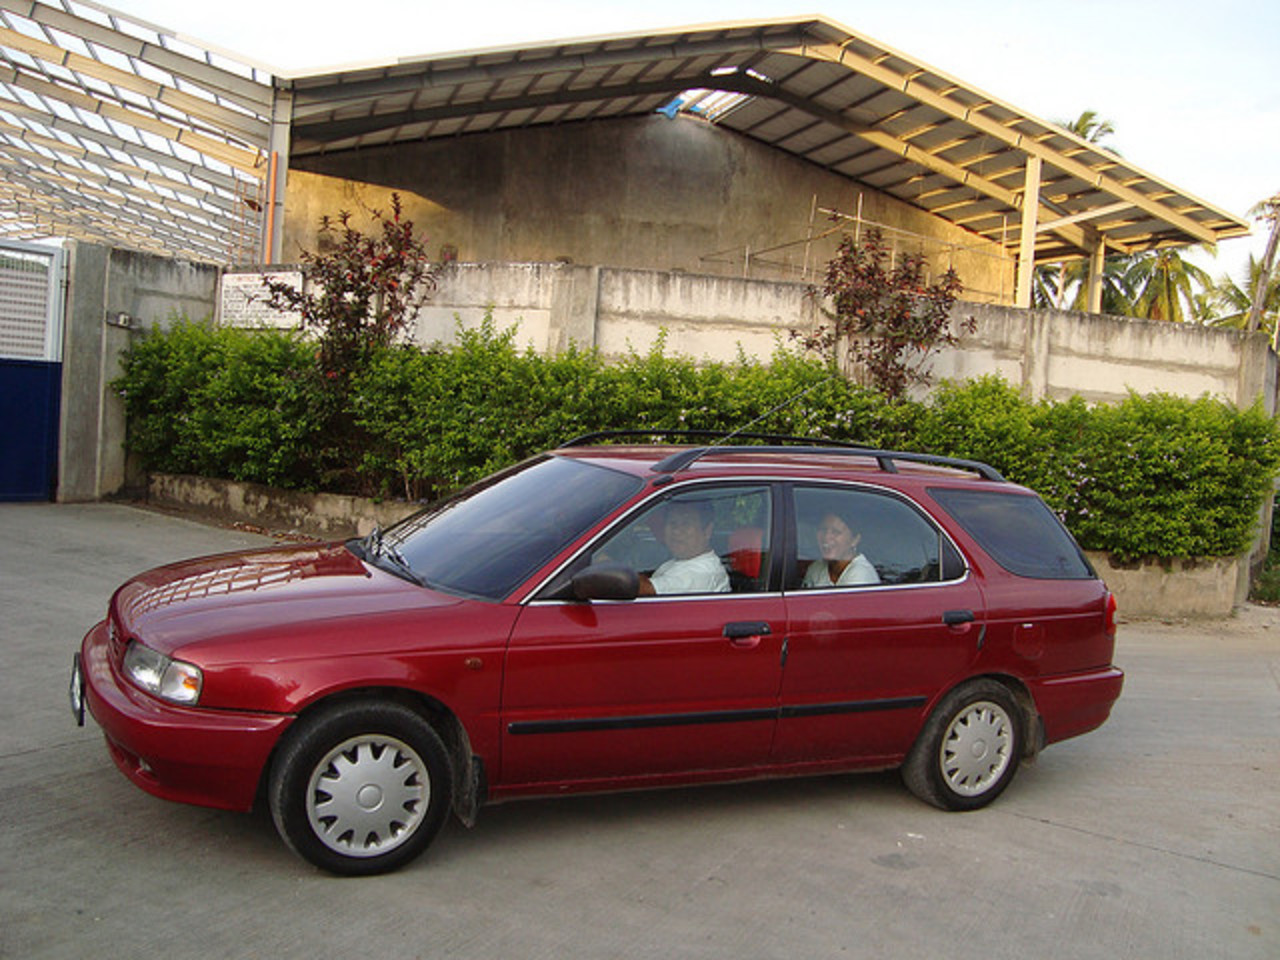 1998 Suzuki Esteem Wagon | Flickr - Photo Sharing!